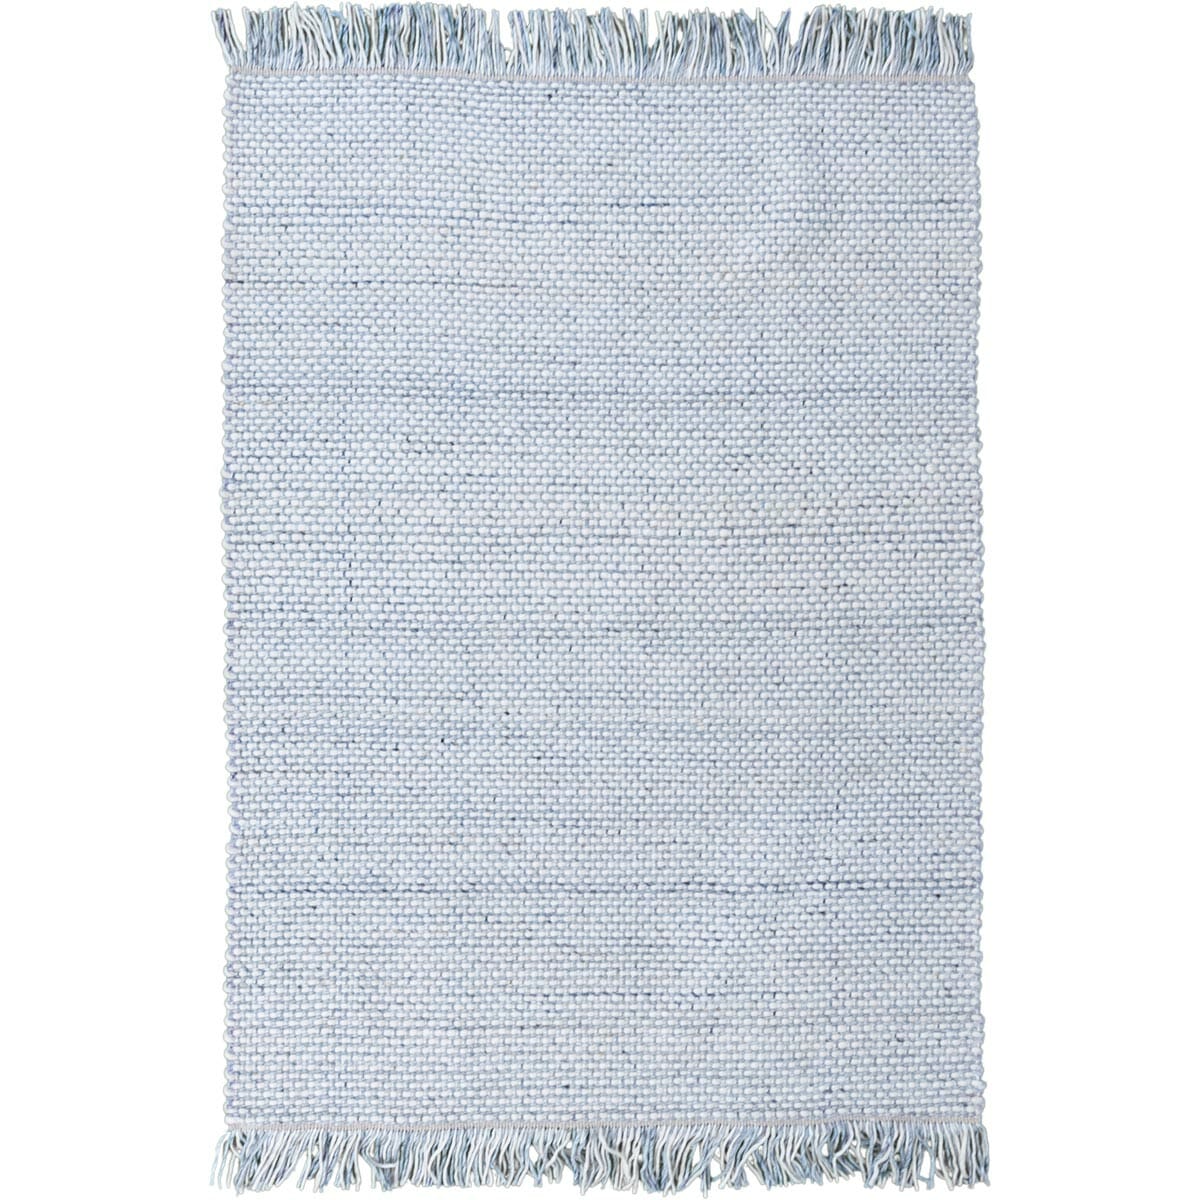 שטיח גפן חלות עבות 04 לבן/כחול עם פרנזים | השטיח האדום